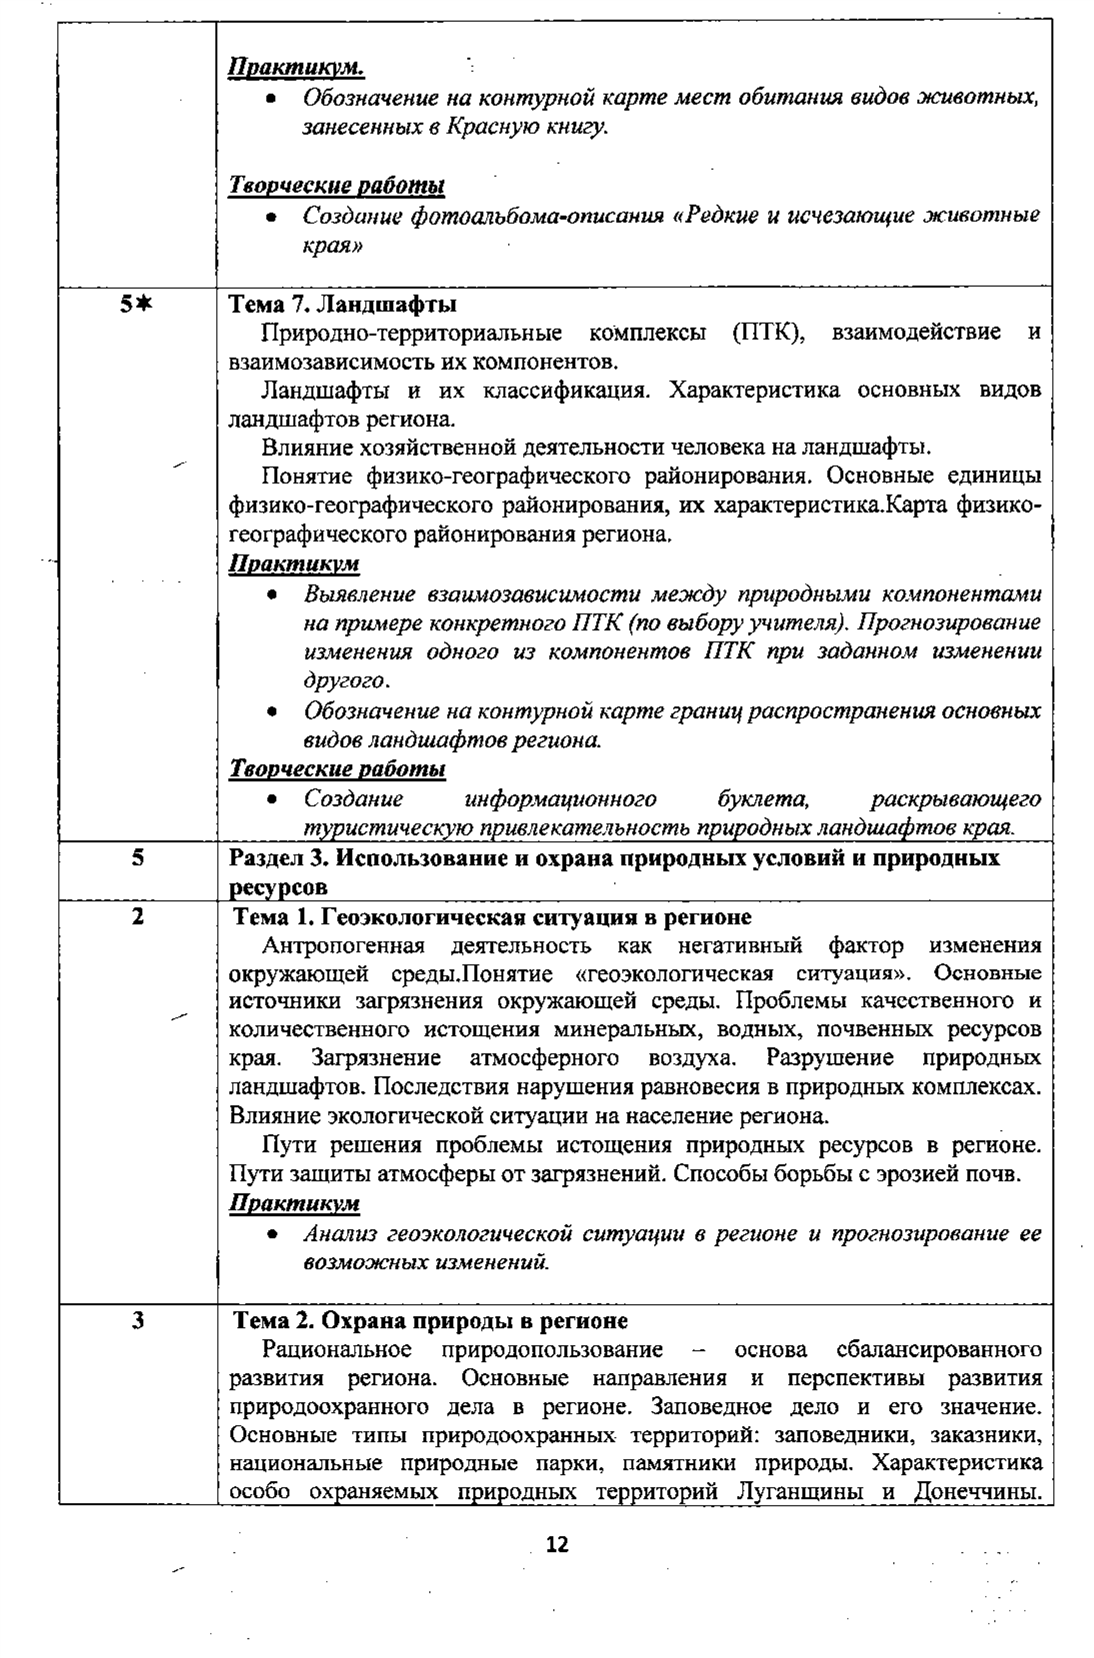 Рабочая программа по учебному предмету «Геограия», 5-9 классы с русским языком обучения (Базовый уровень) на 2016-2020 учебные годы